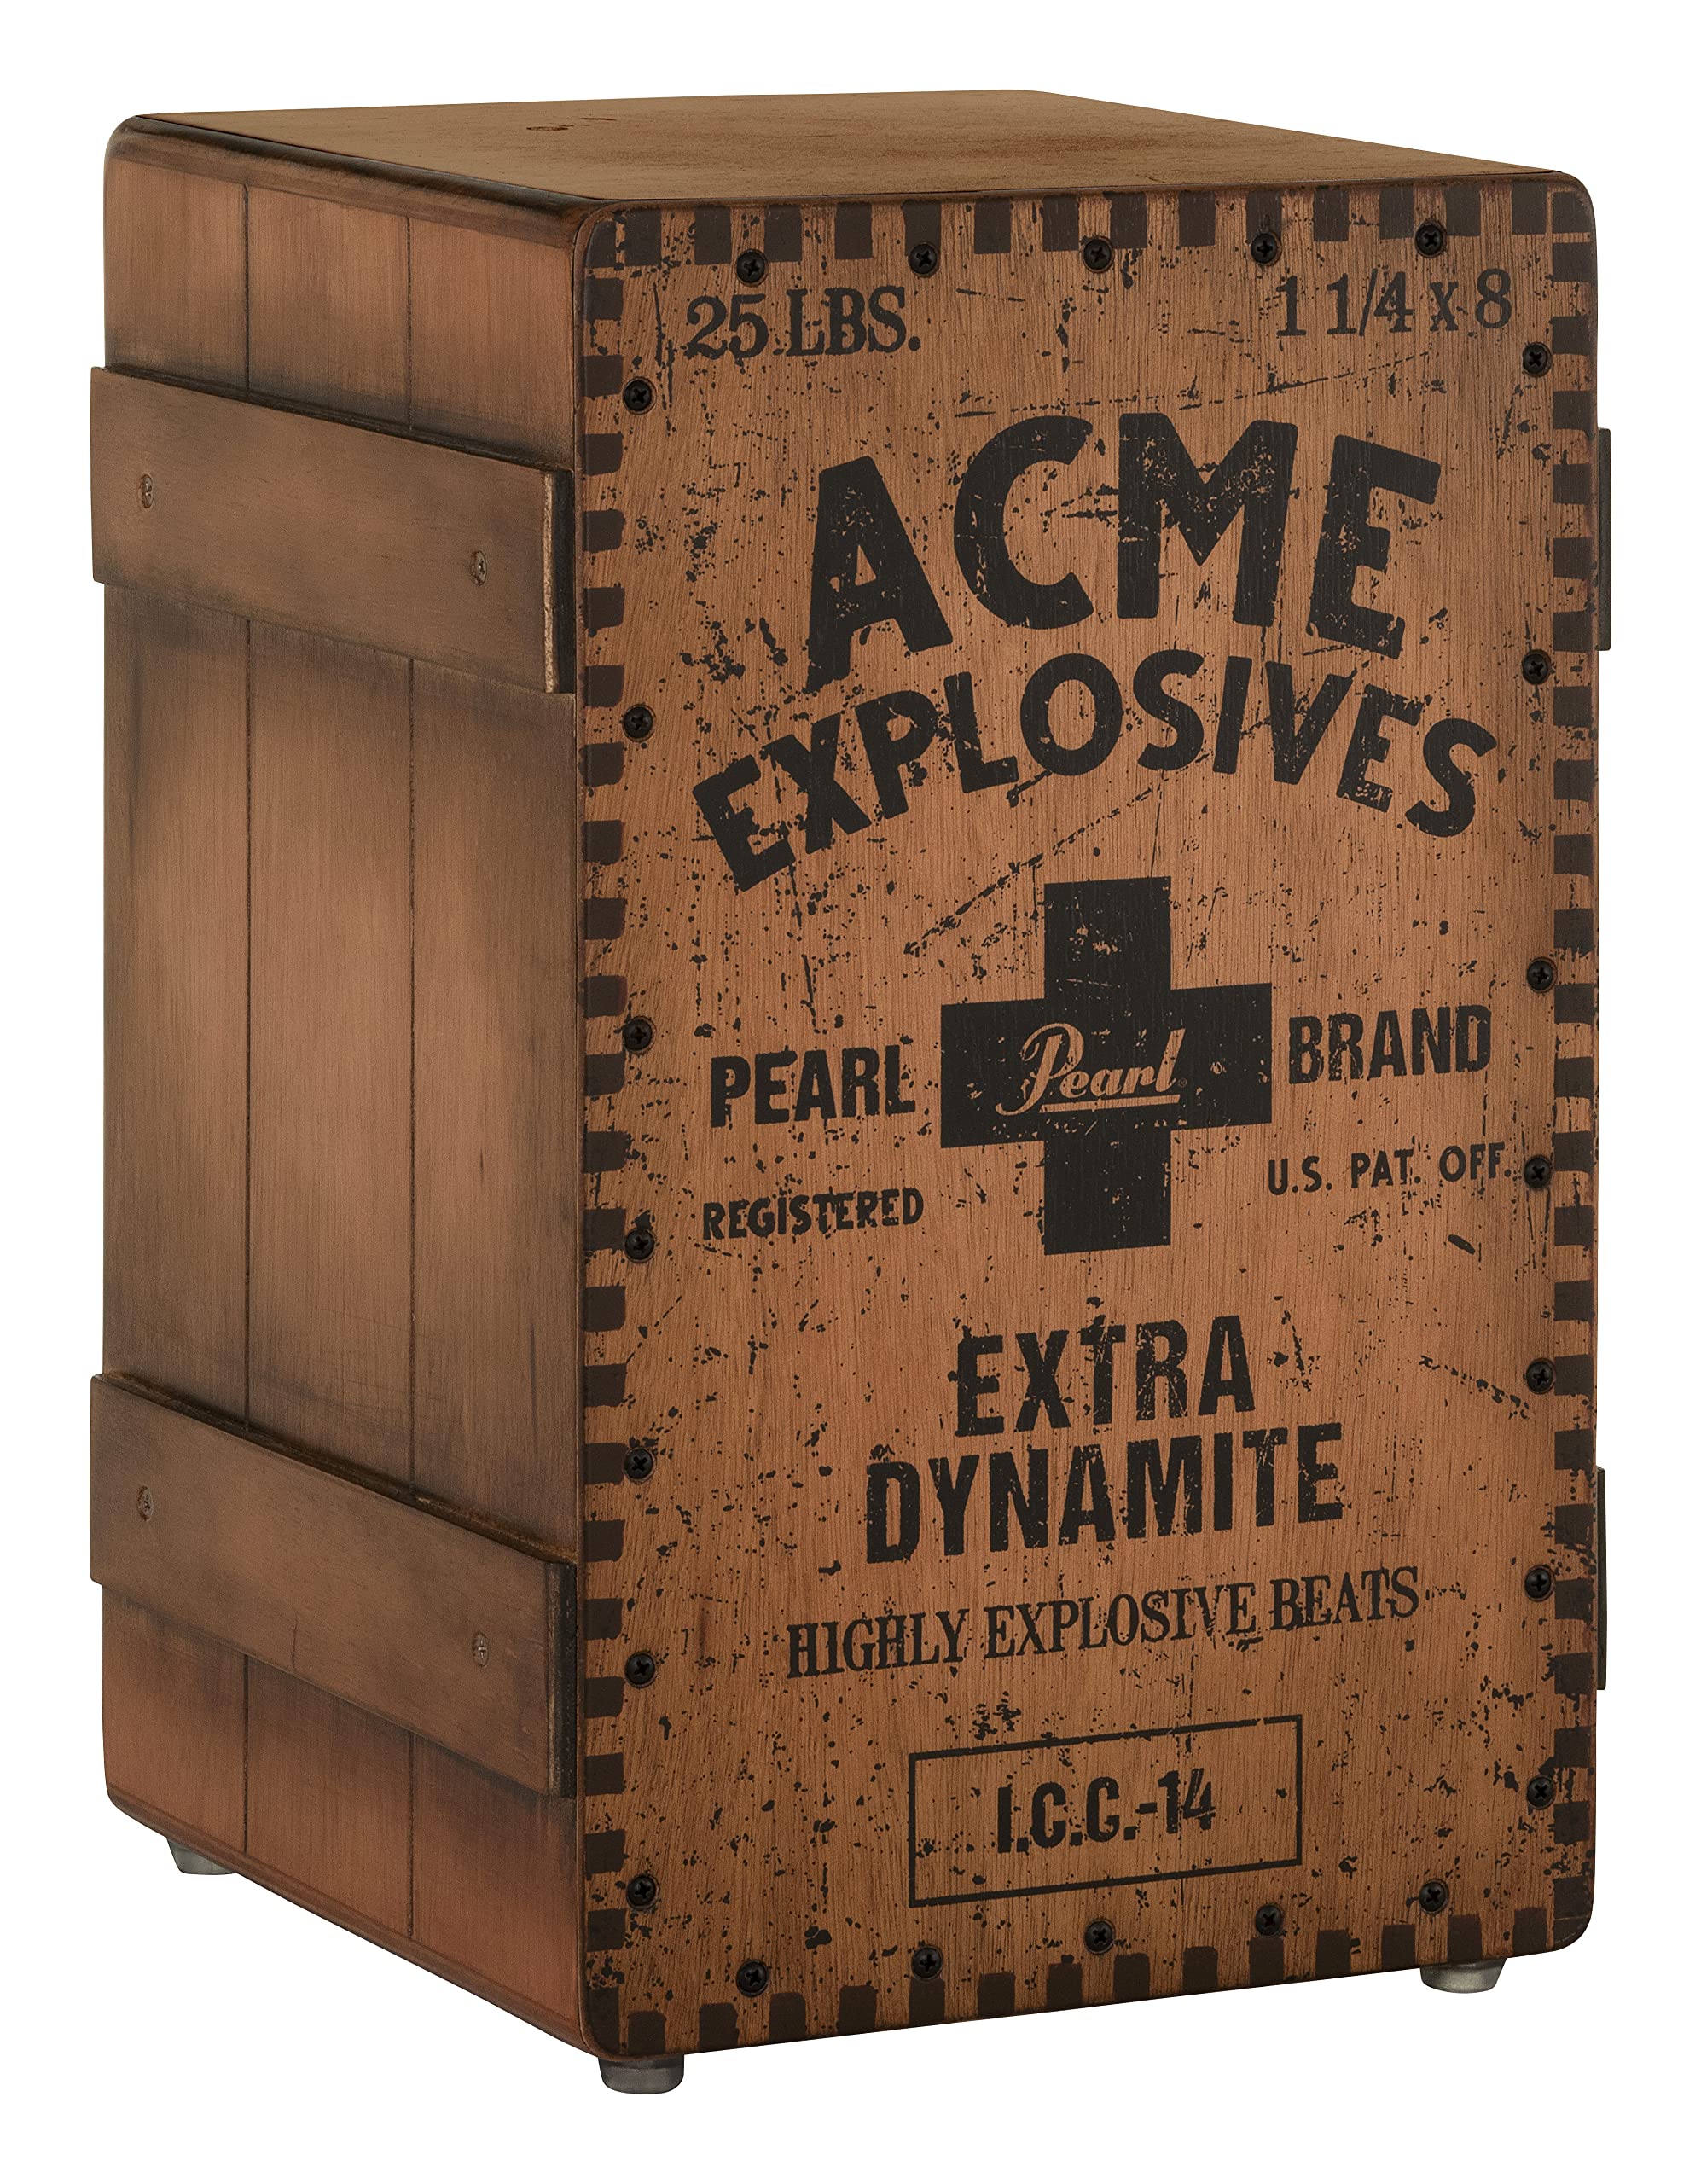 Pearl Cajón estilo cajón Primero con frente Acme